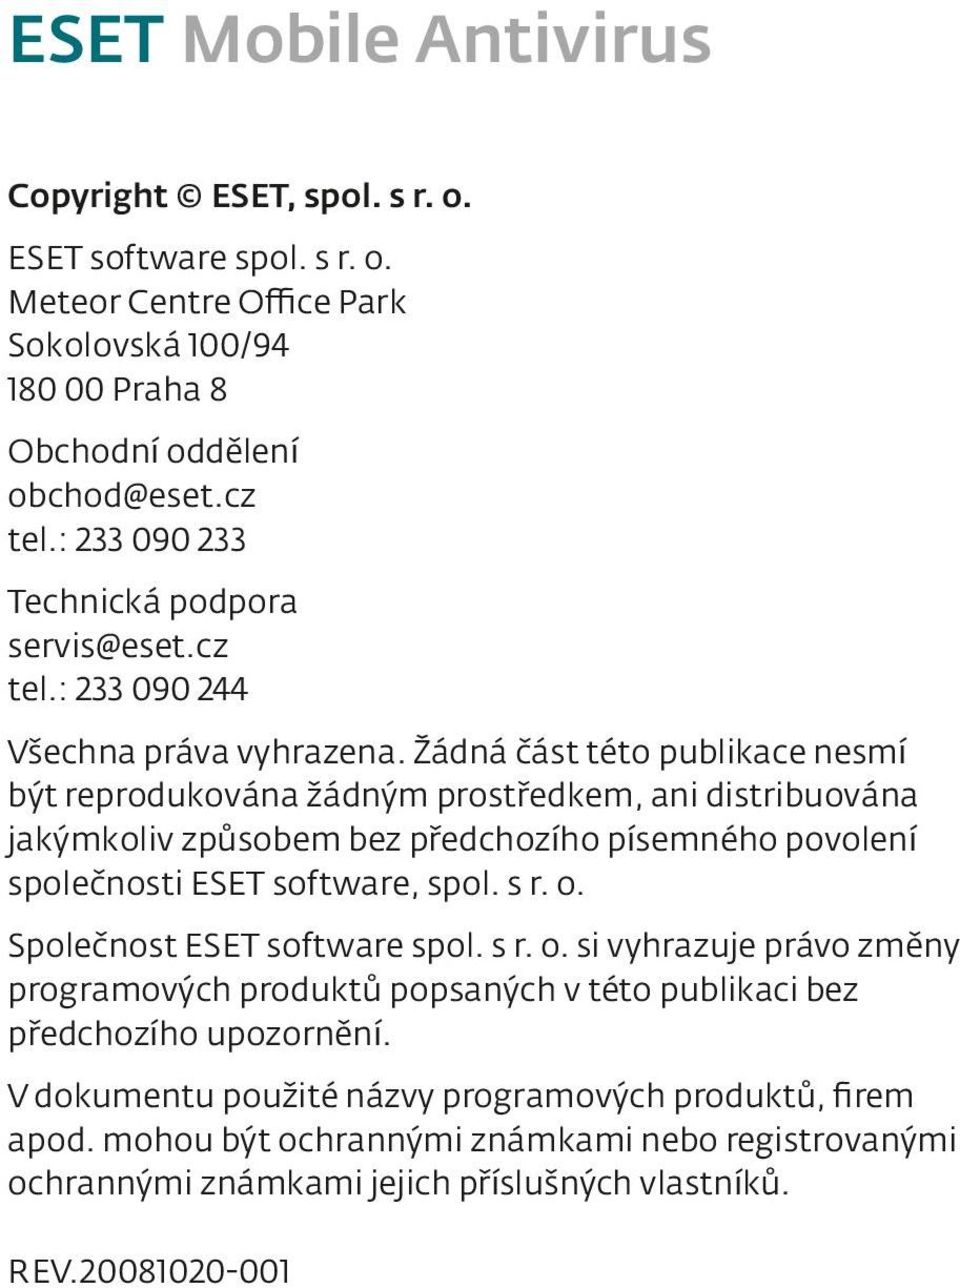 Žádná část této publikace nesmí být reprodukována žádným prostředkem, ani distribuována jakýmkoliv způsobem bez předchozího písemného povolení společnosti ESET software, spol. s r. o.